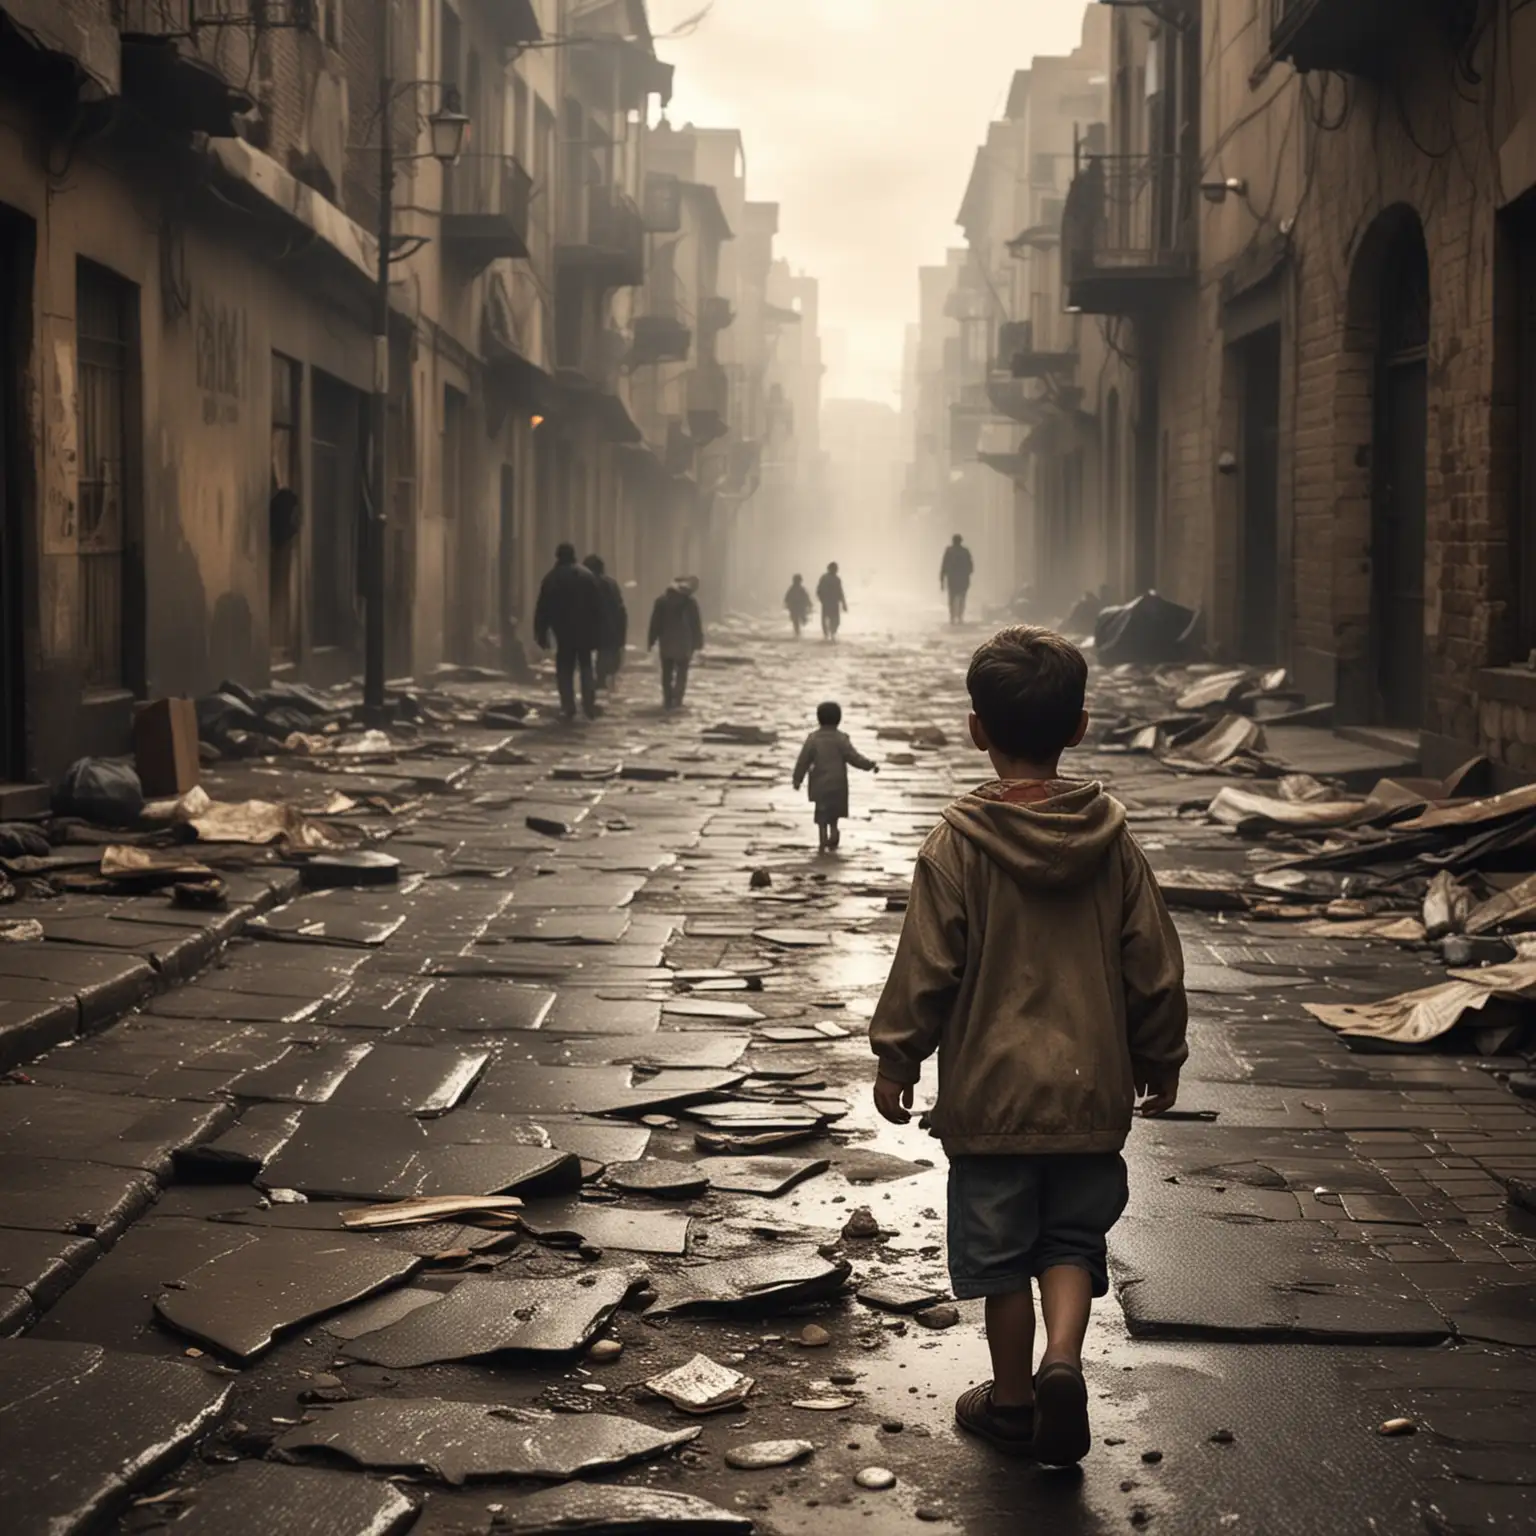 Wat als God zou komen lopen Door de straten van de stad Zou Hij dan de tranen drogen Van elk verloren kind elke dag